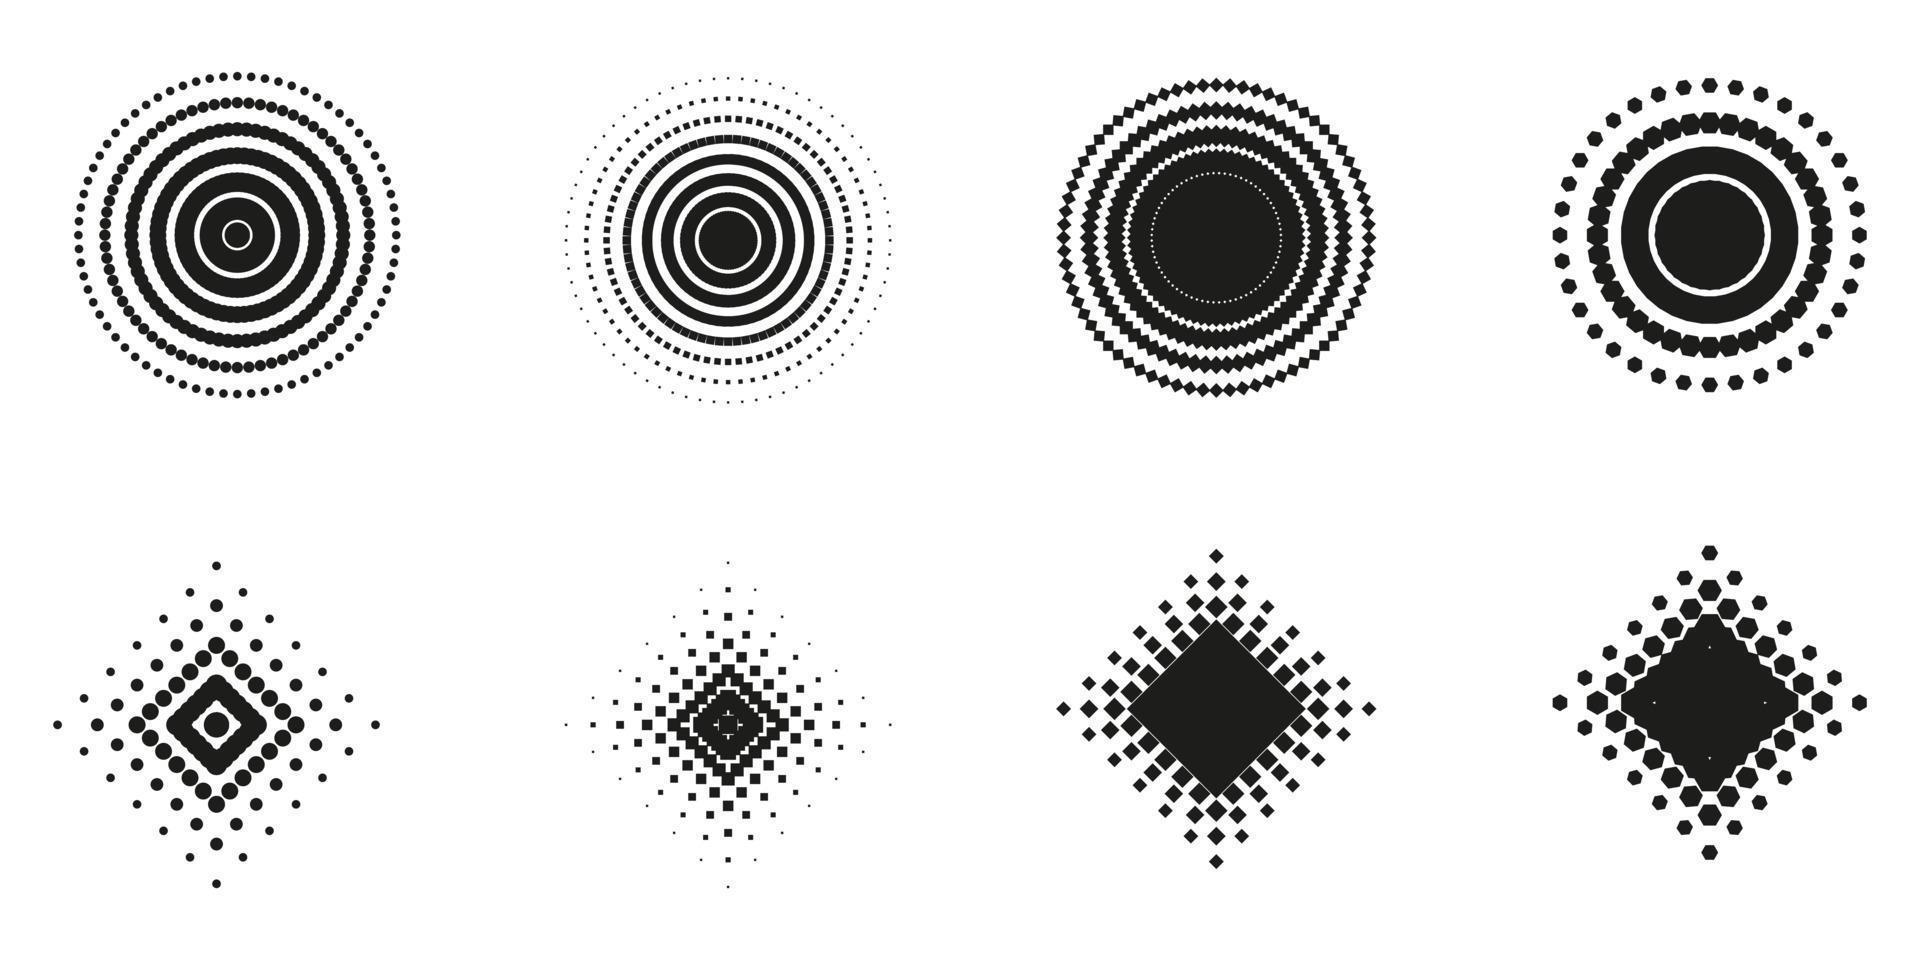 círculo punteado, patrón de rombos en blanco y negro. conjunto de forma geométrica de círculo, rombo, cuadrado, hexágono en estilo moderno. diseño de elementos geométricos abstractos. ilustración vectorial aislada. vector